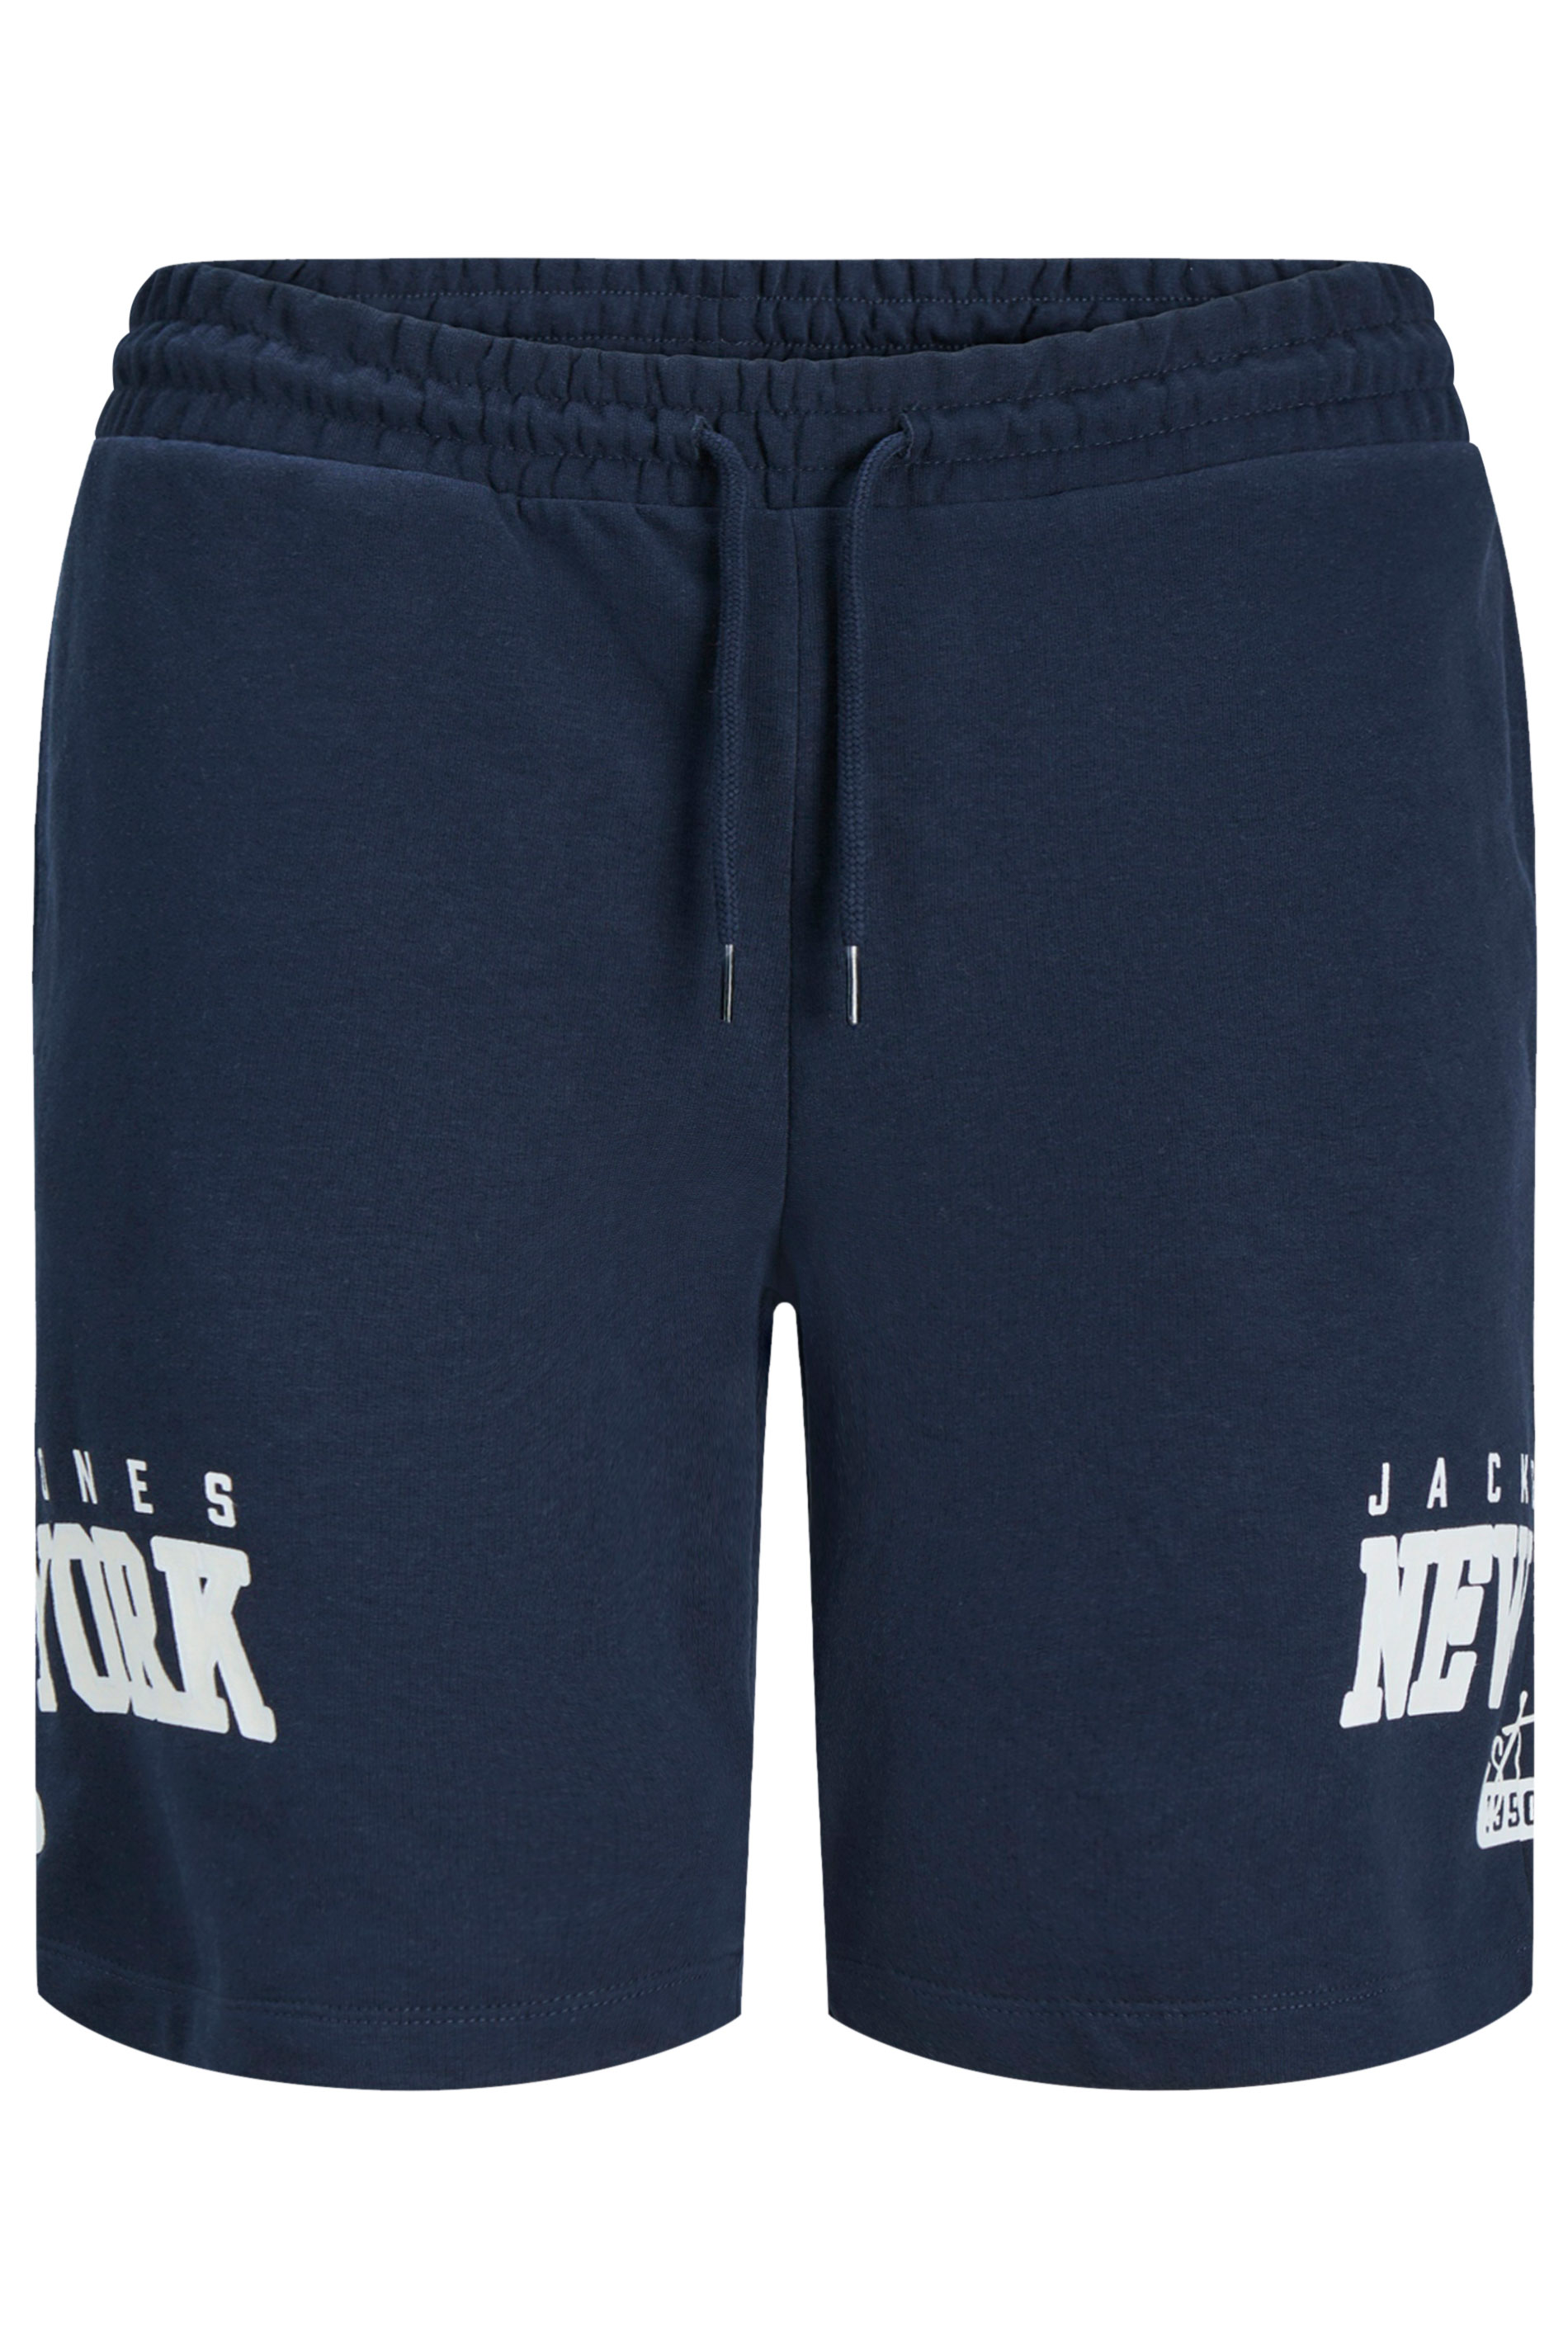 JACK & JONES Navy Blue Sweat Shorts | BadRhino 3